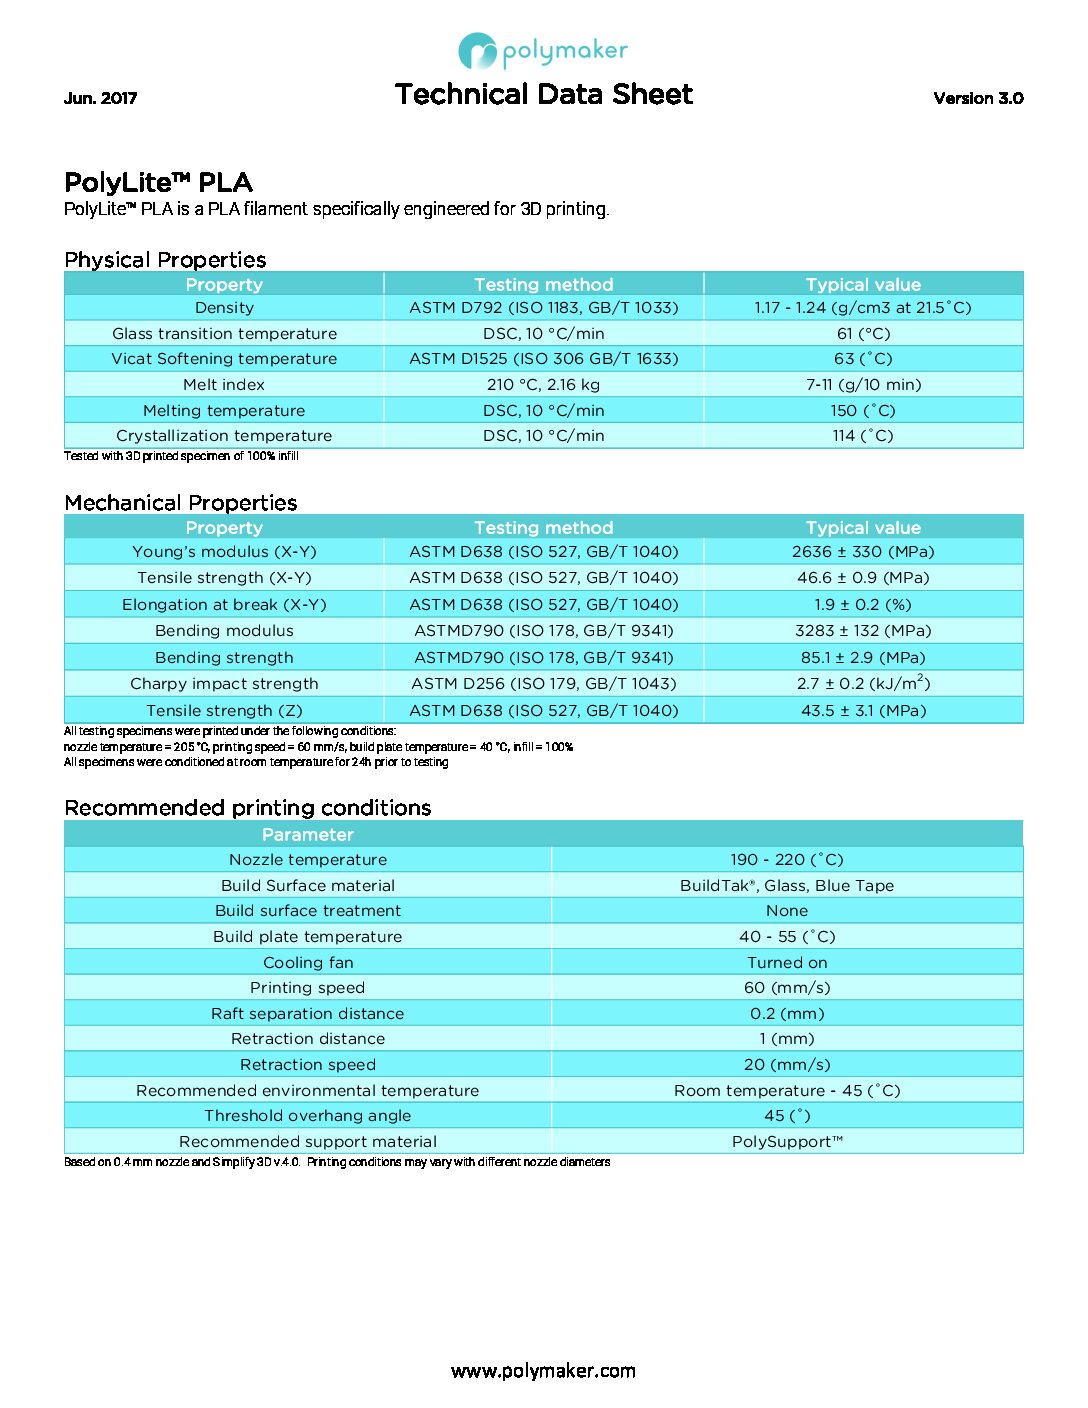 PolyLite™ PLA TDS V3 pdf